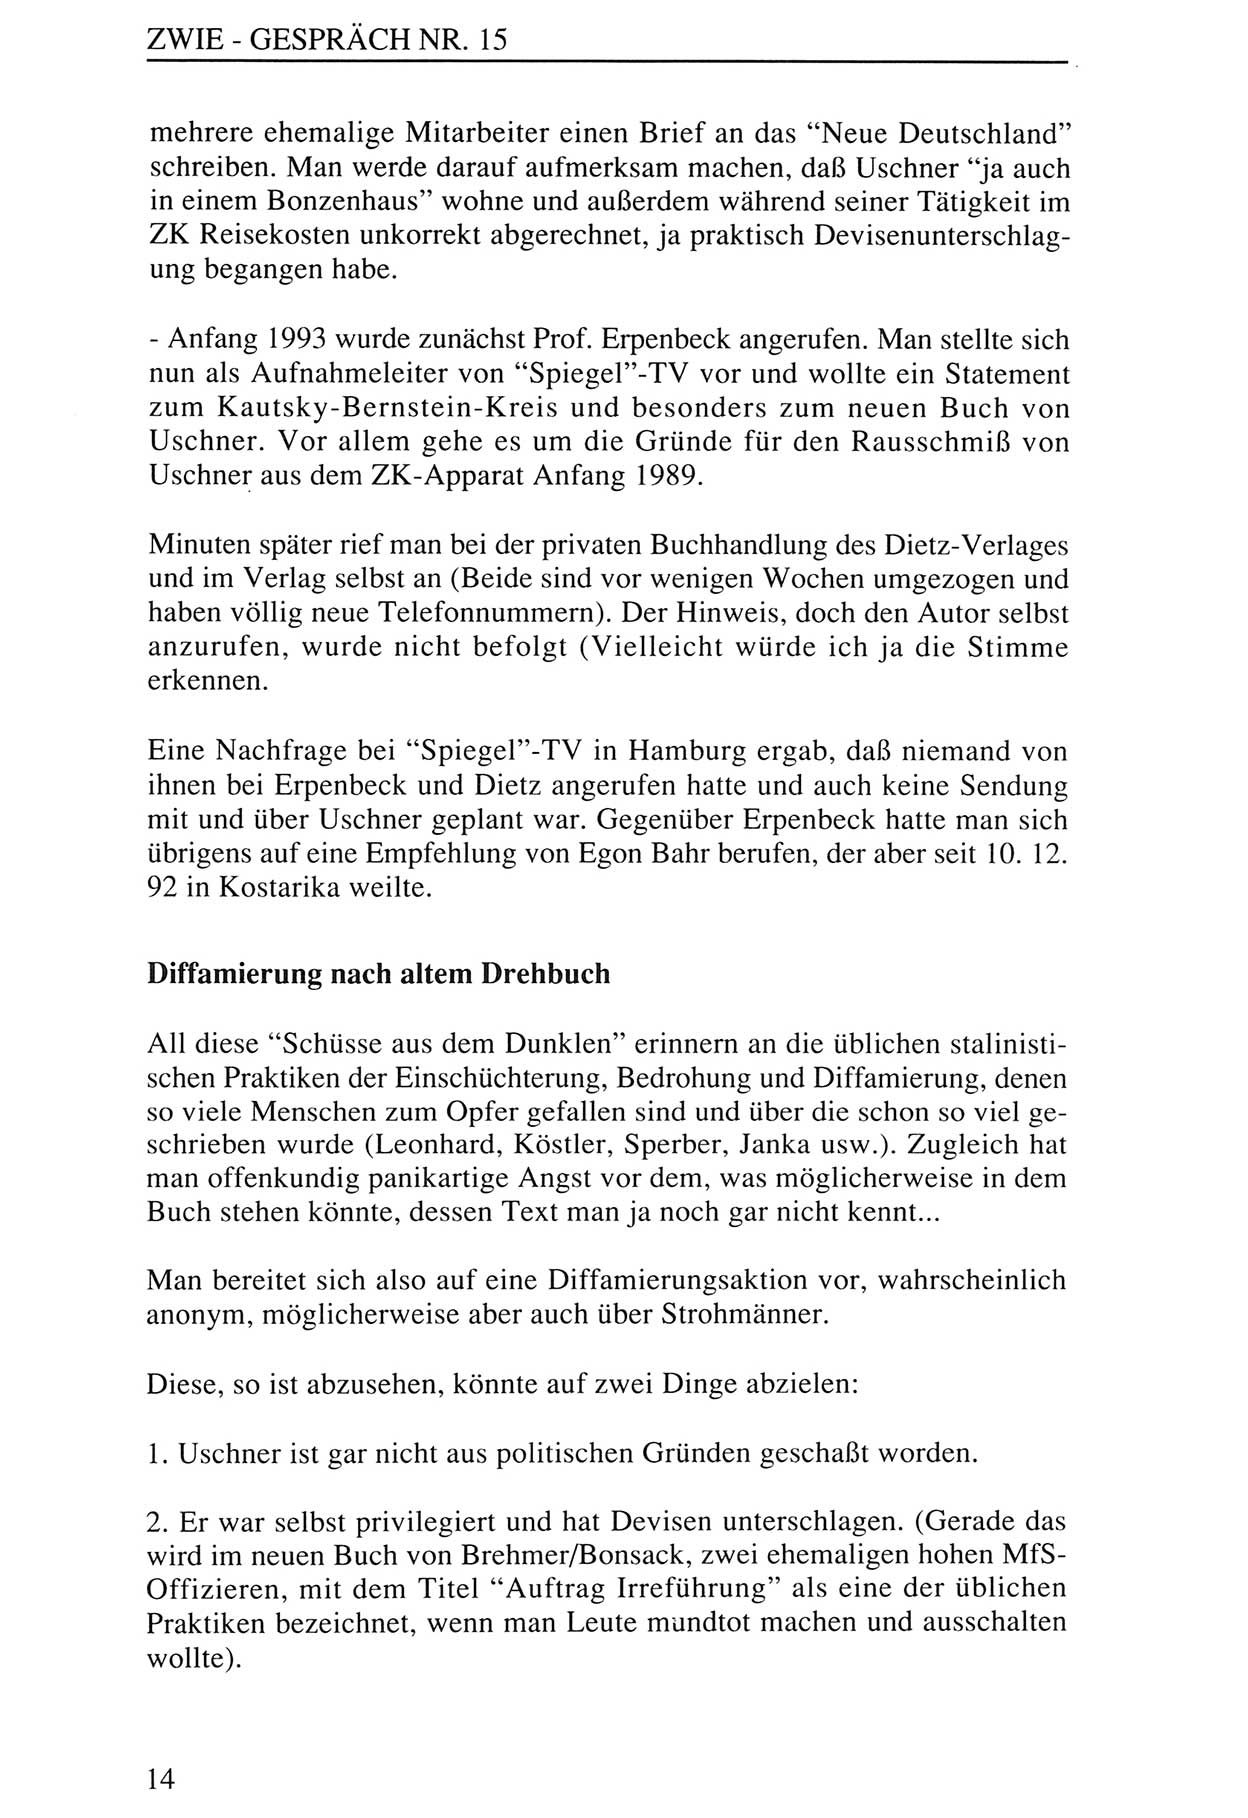 Zwie-Gespräch, Beiträge zur Aufarbeitung der Staatssicherheits-Vergangenheit [Deutsche Demokratische Republik (DDR)], Ausgabe Nr. 15, Berlin 1993, Seite 14 (Zwie-Gespr. Ausg. 15 1993, S. 14)